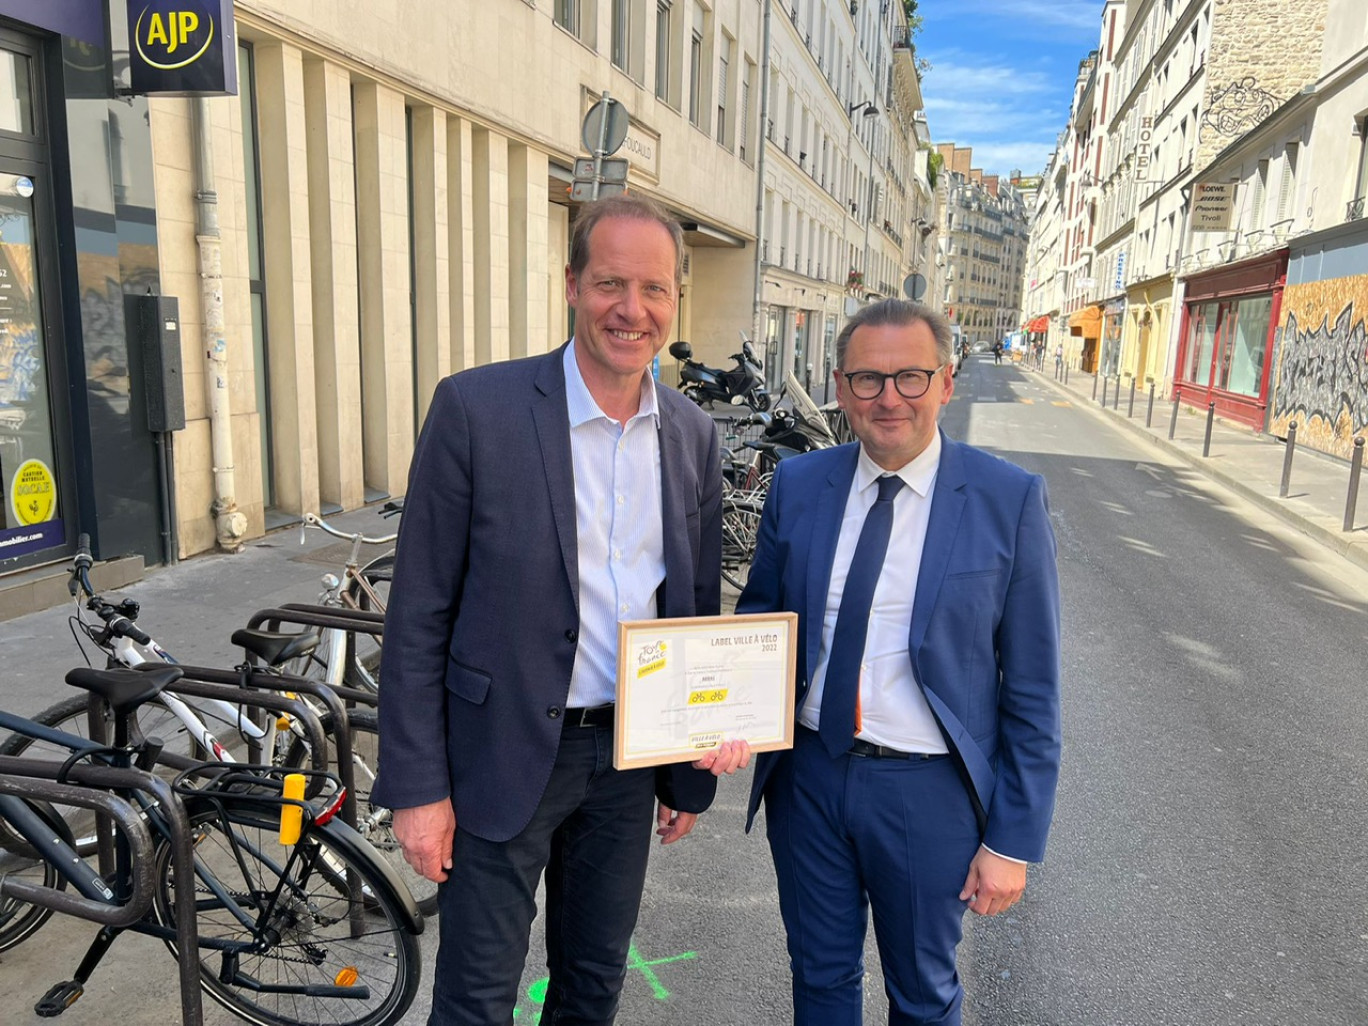 Christian Prudhomme, directeur du cyclisme chez ASO, a remis le label «Ville à vélo» à Frédéric Leturque, maire d’Arras et président de la Communauté urbaine d’Arras.